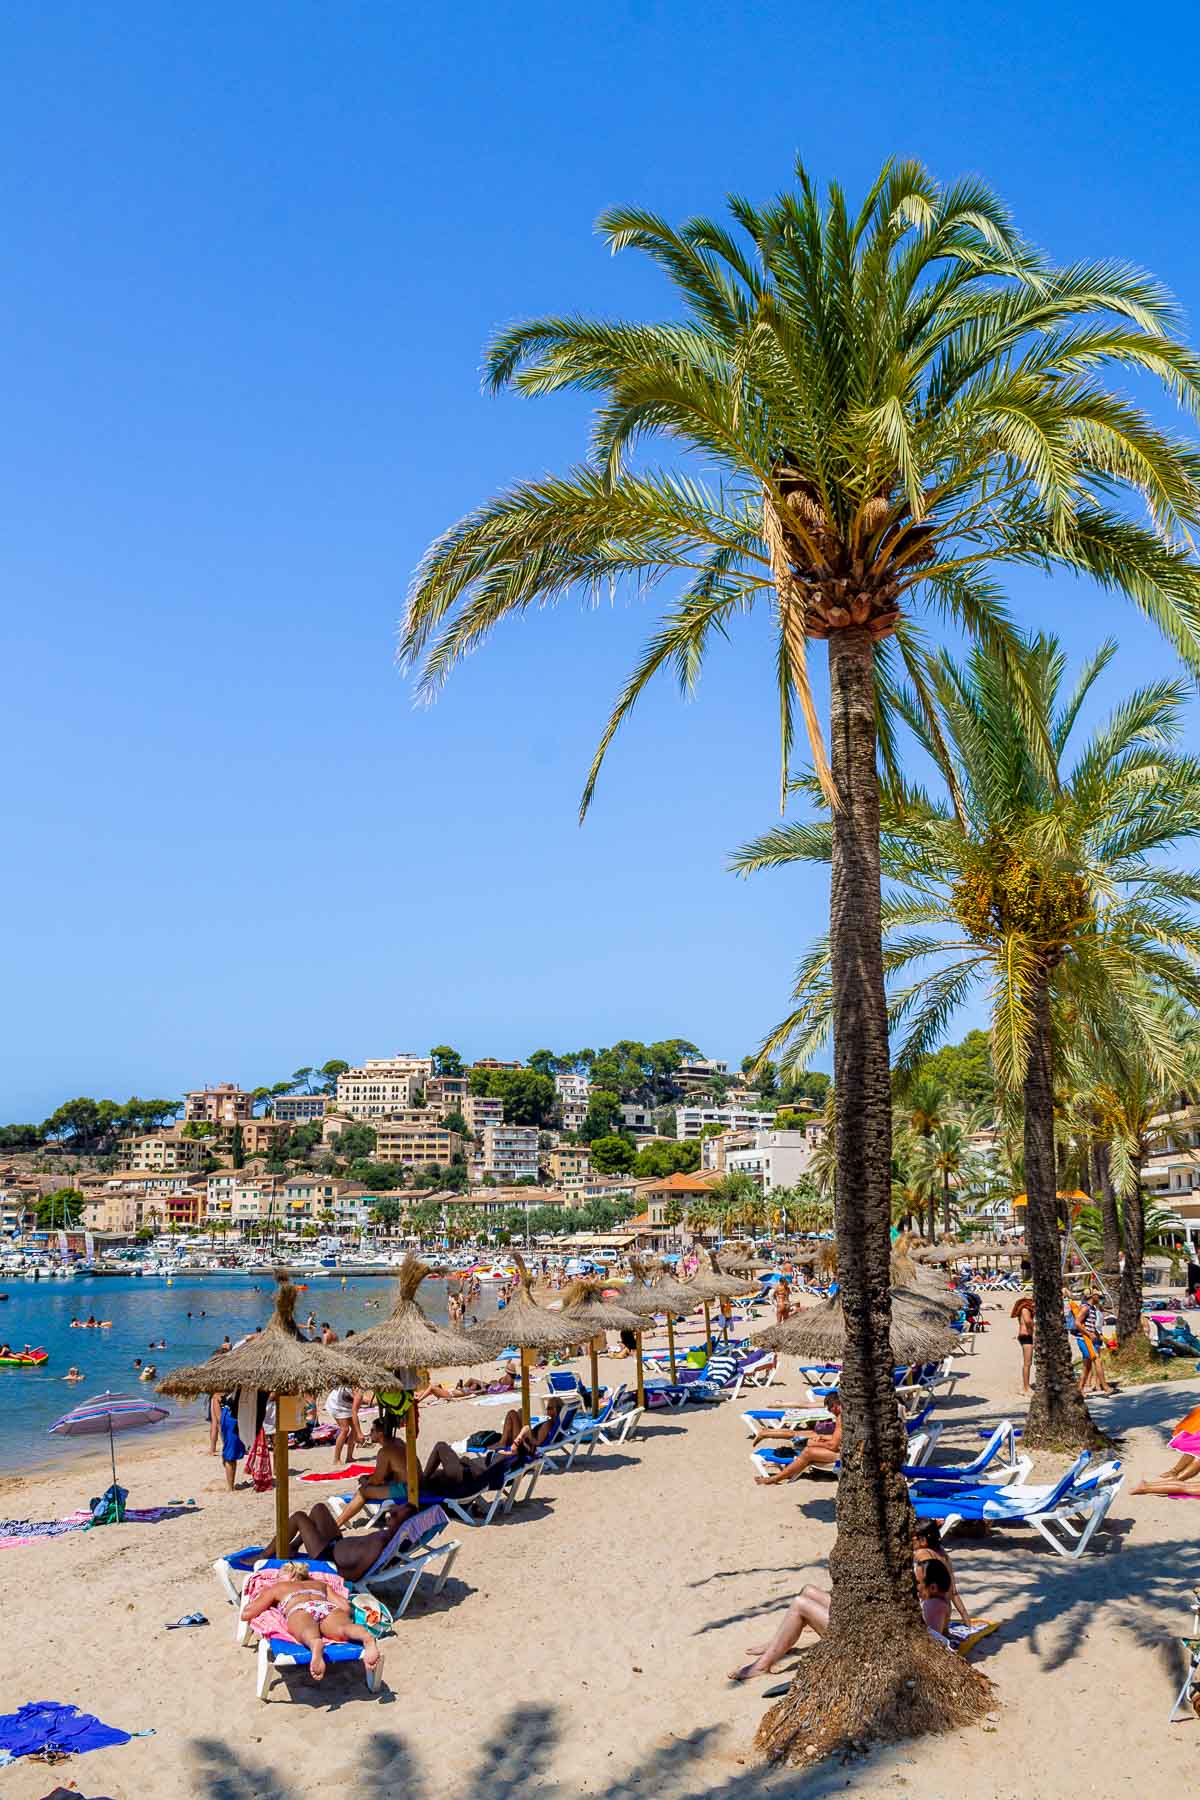 Beach in Port de Soller, Mallorca